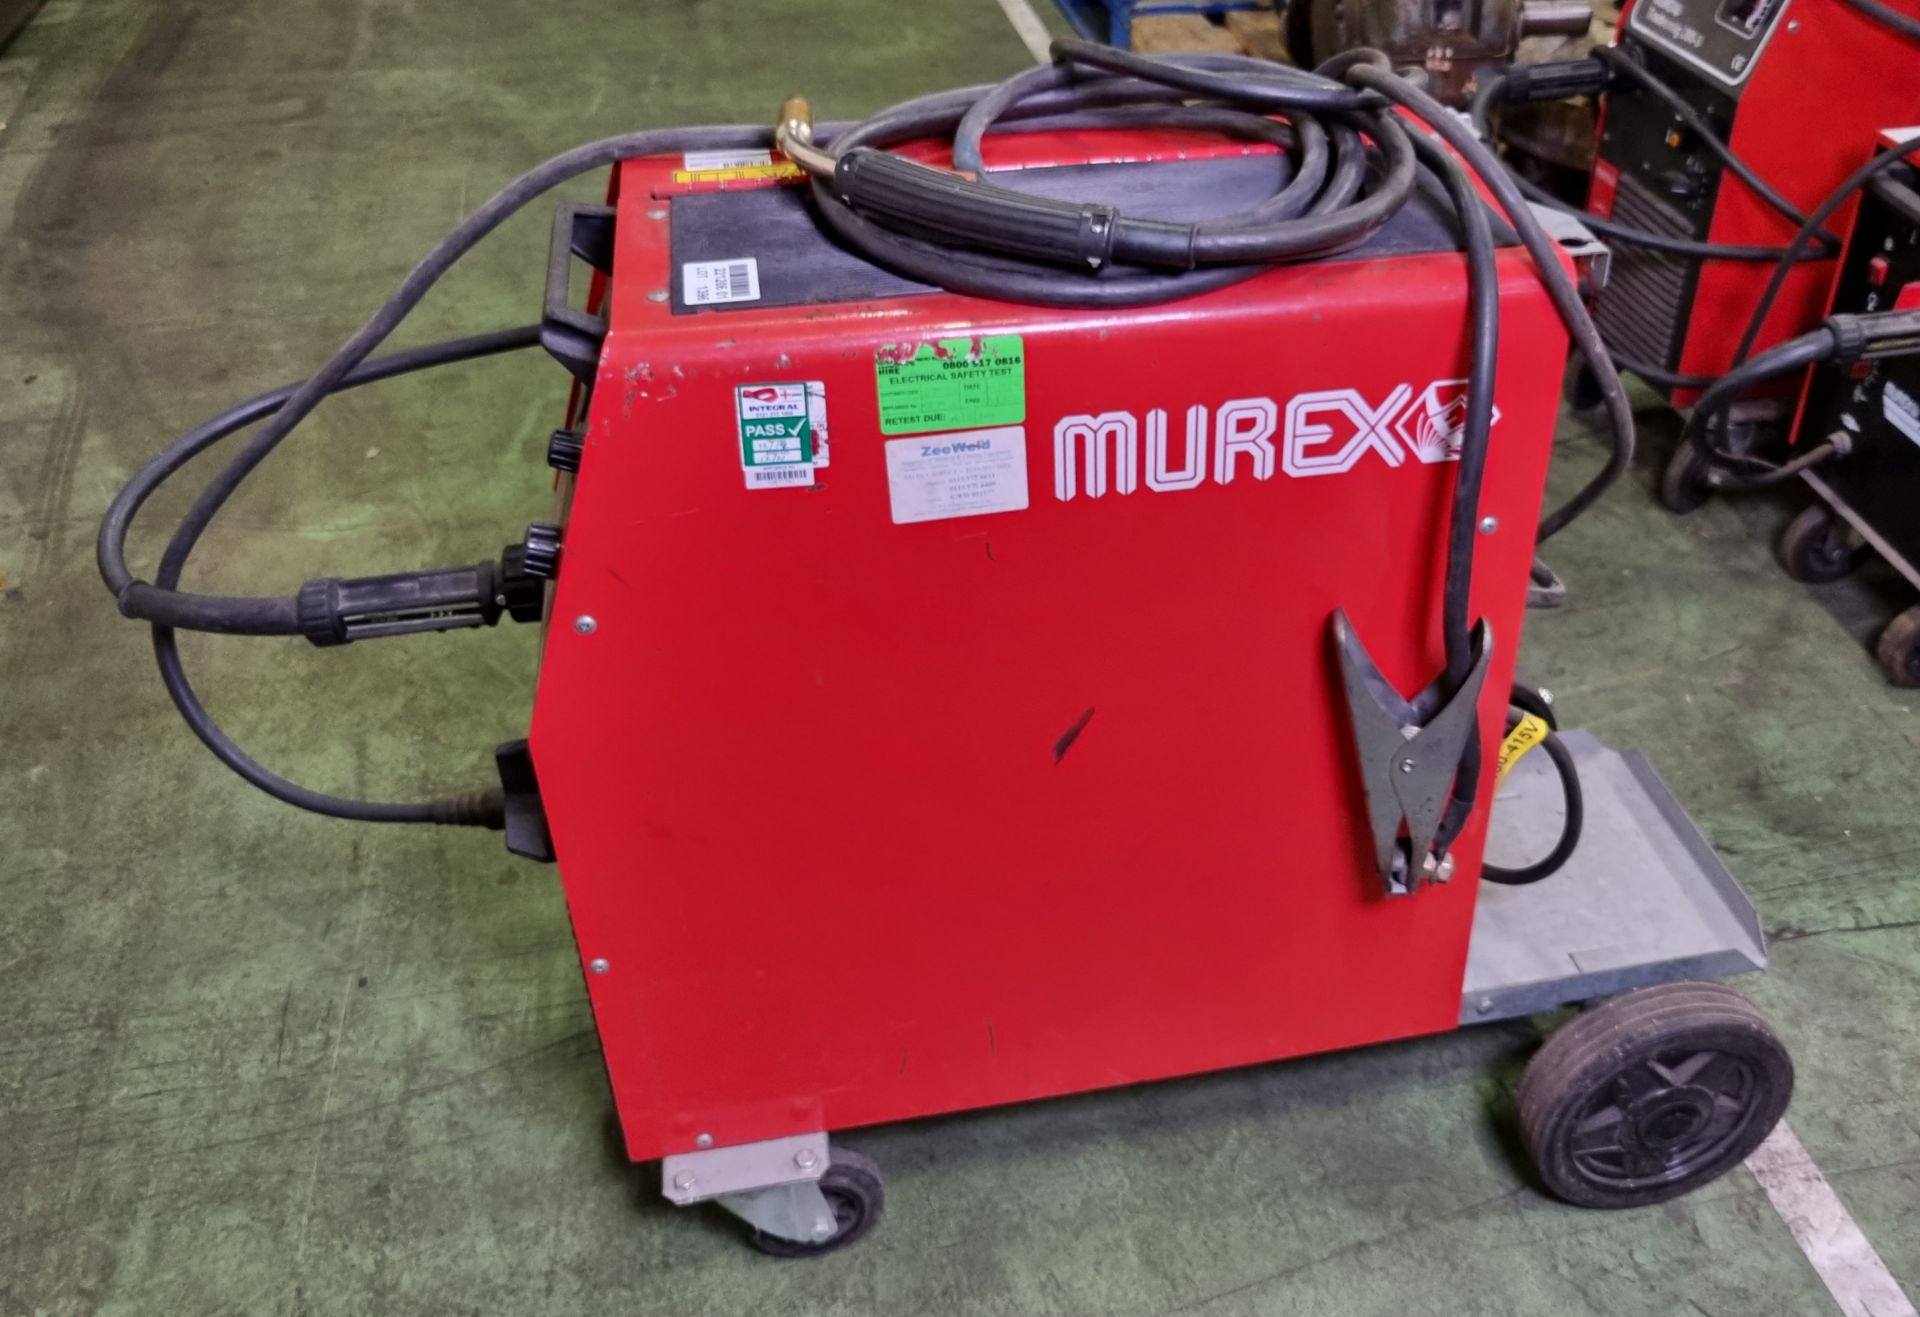 Murex Tradesmig 280-3 three phase MIG welder